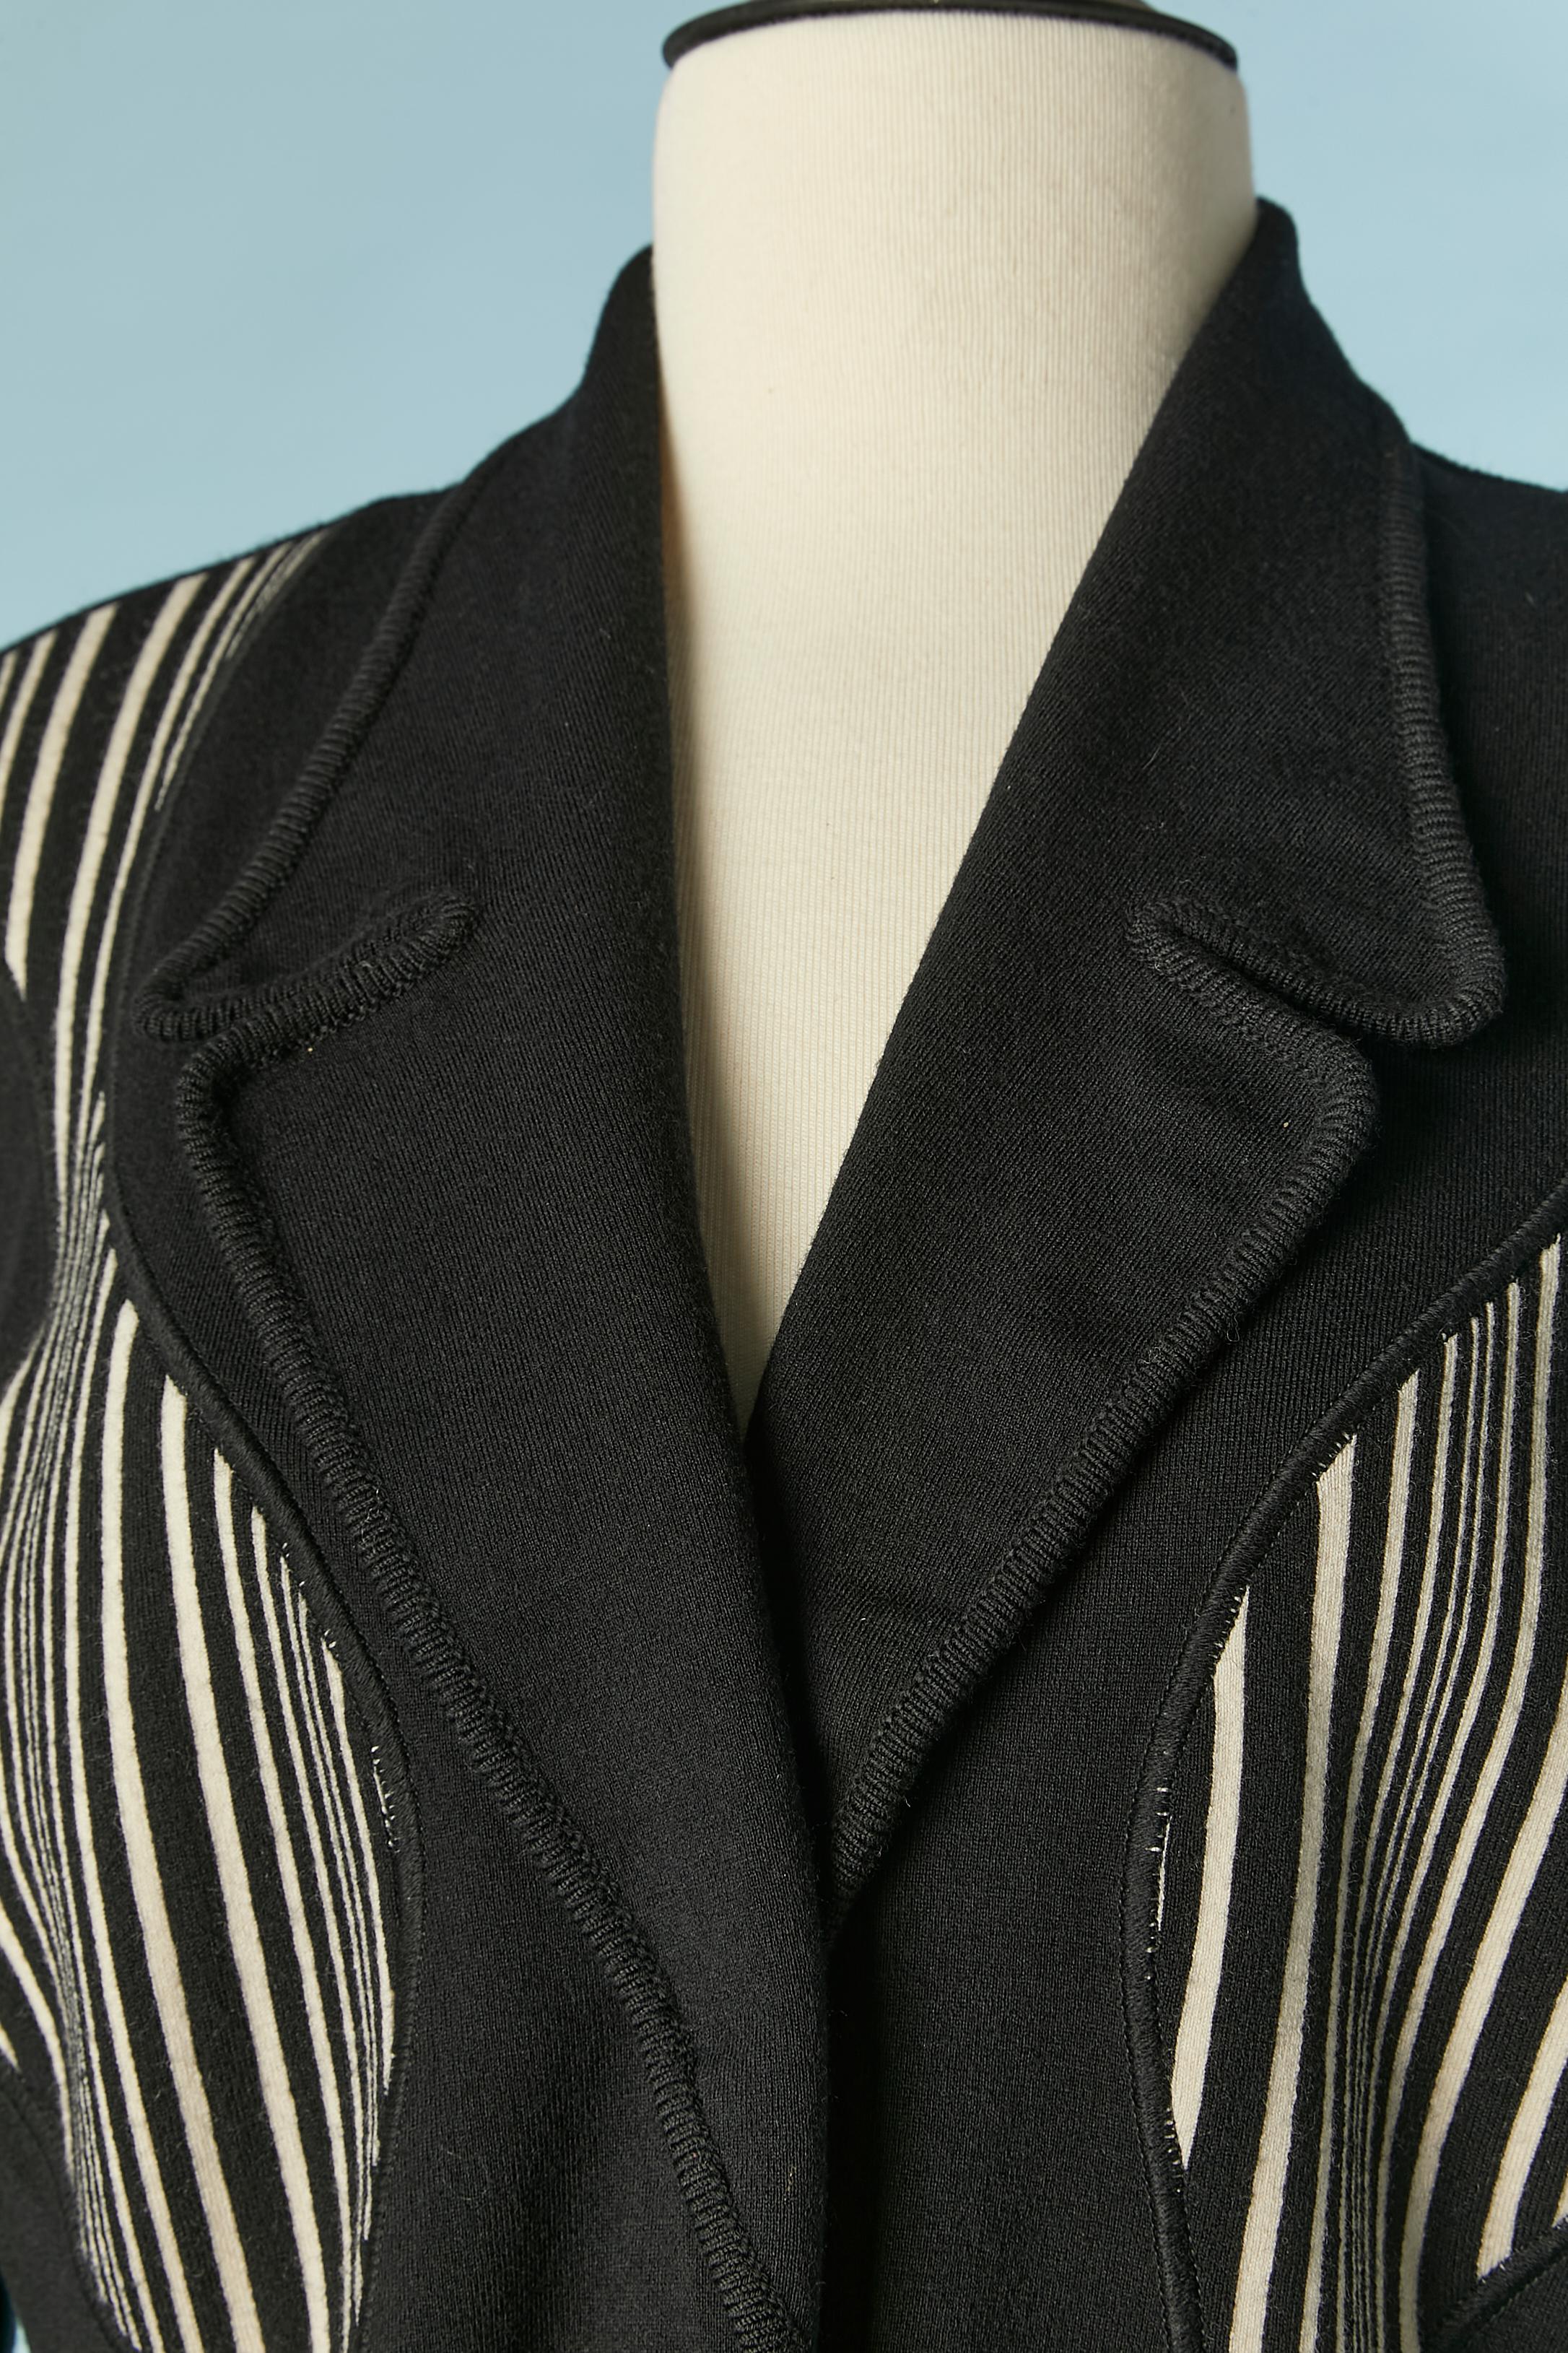 Veste en jersey de laine noir et blanc à simple boutonnage avec fermeture à bouton-pression. 
Découpage. Poches sur les deux côtés. 
Composition du tissu : 85% laine, 10% polyamide, 5% élasthanne 
TAILLE M 